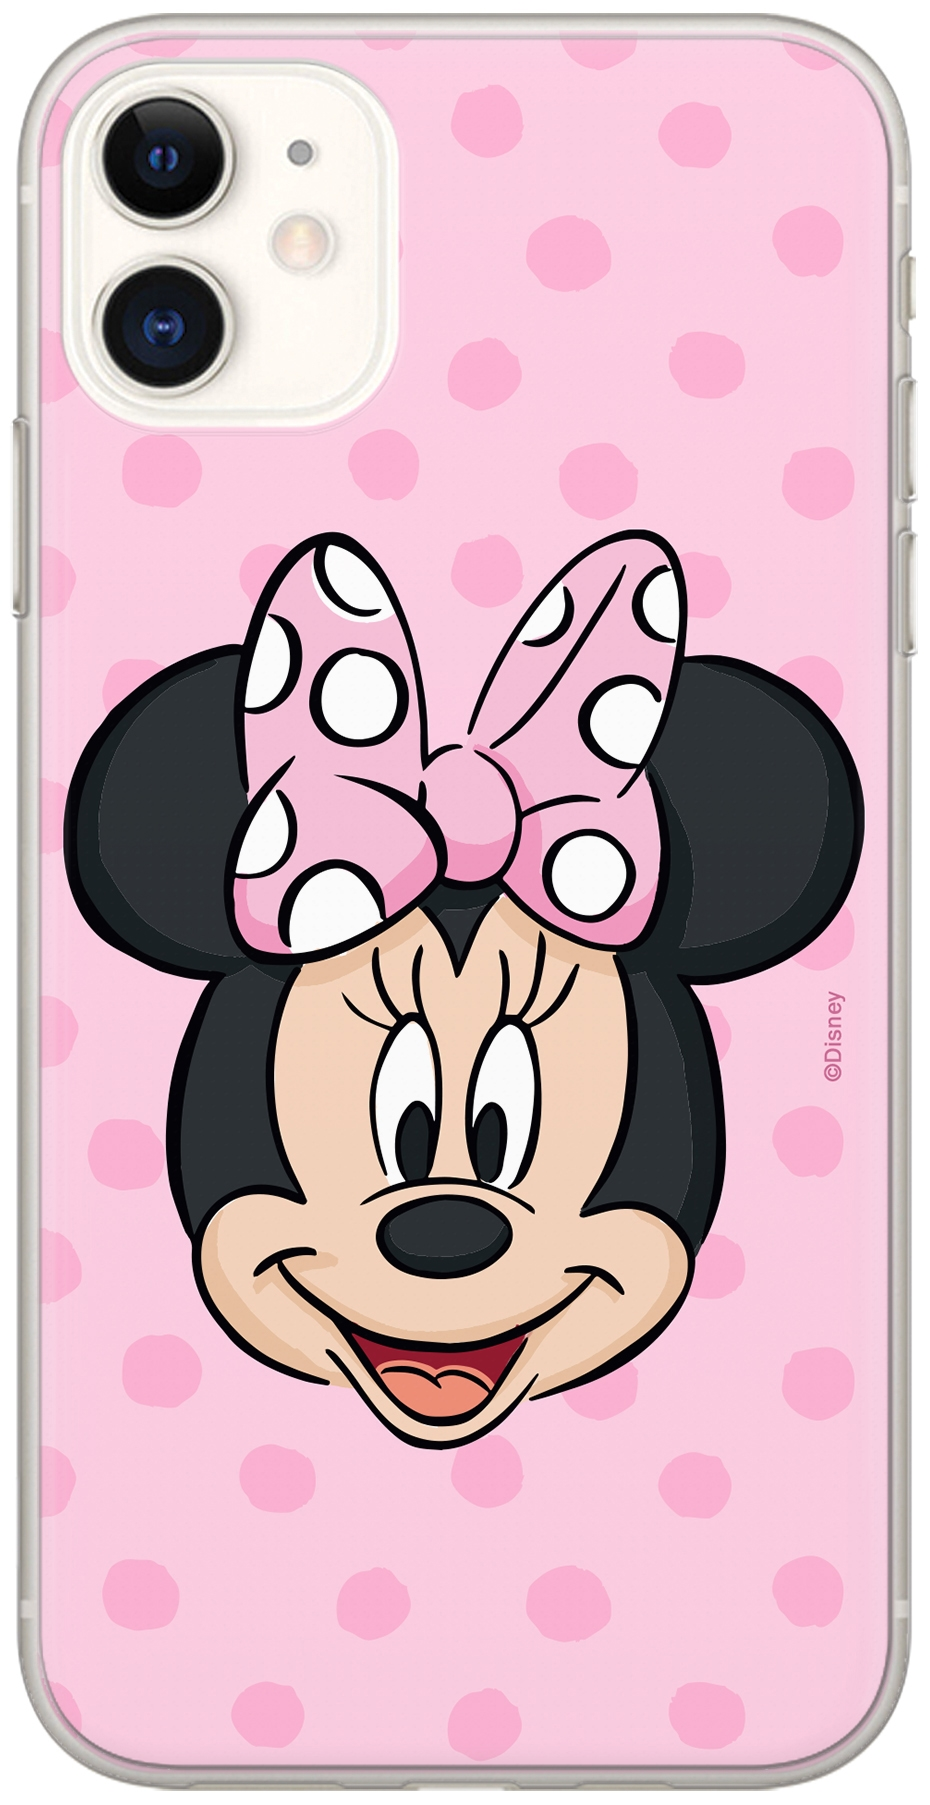 Disney Lizenz Handyhülle für Samsung S8 Hülle Motiv Minnie 008 Full Print Pink